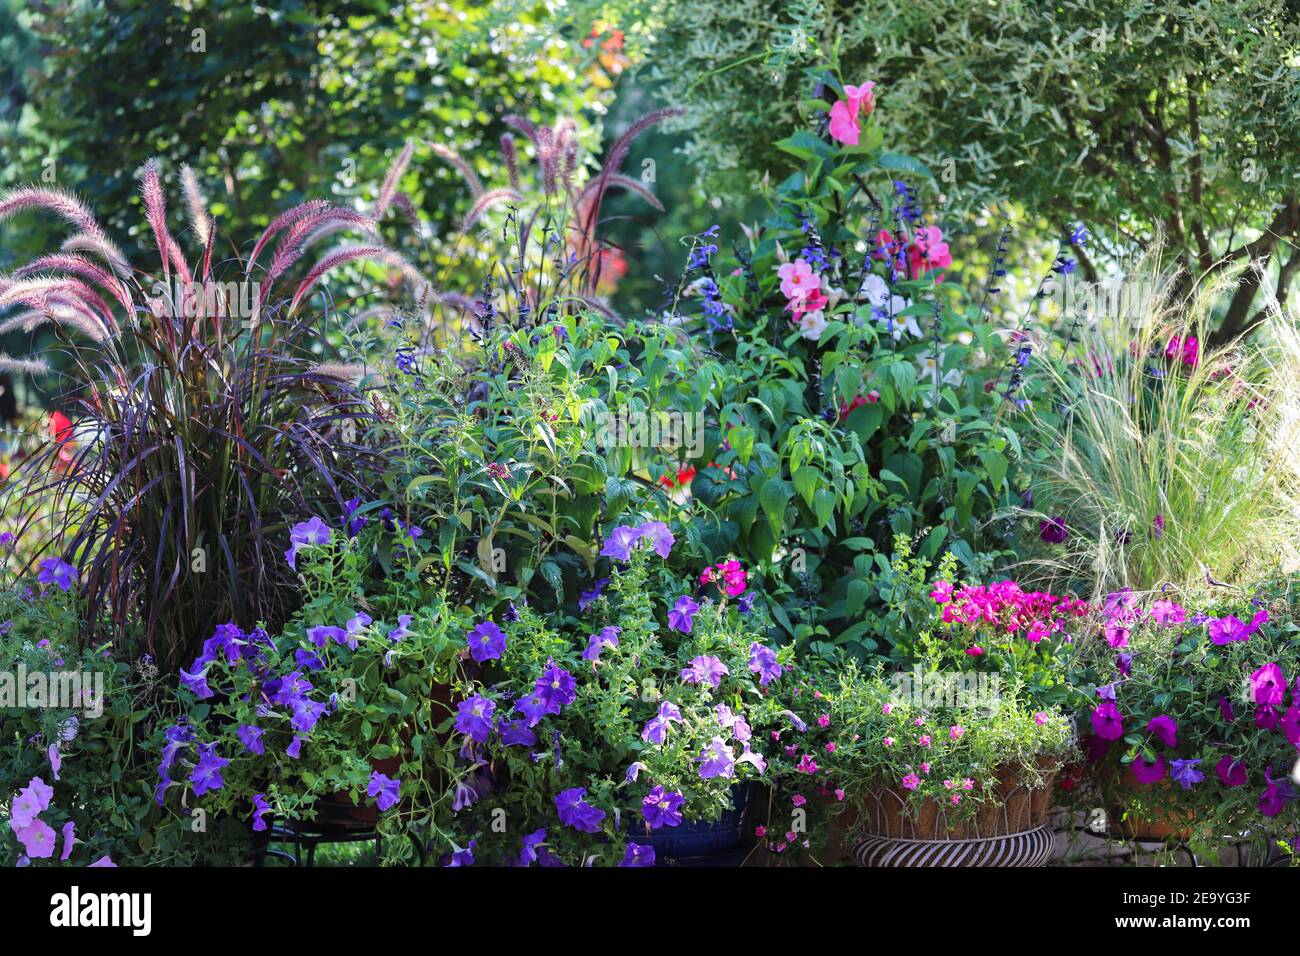 Anmutiges, schimmerndes, violettes Brunnengras, das in den warmen Chicagoer Winden winkt. Stockfoto